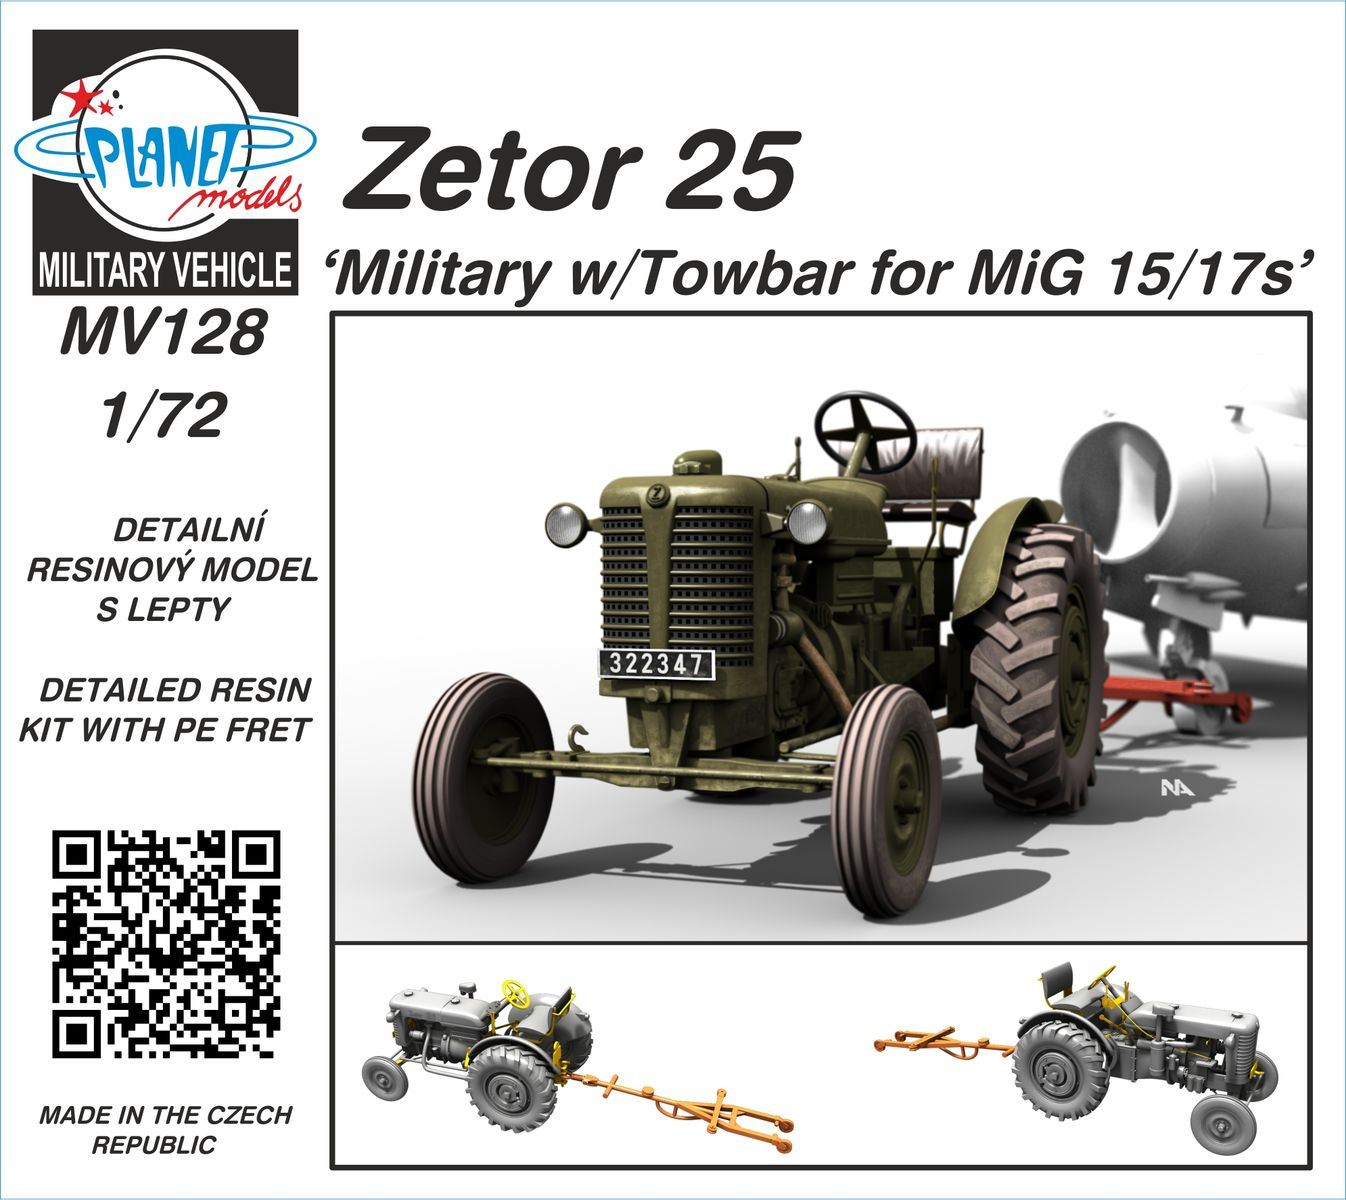 1/72 Zetor 25 ‘Military w/Towbar for MiG 15/17s’